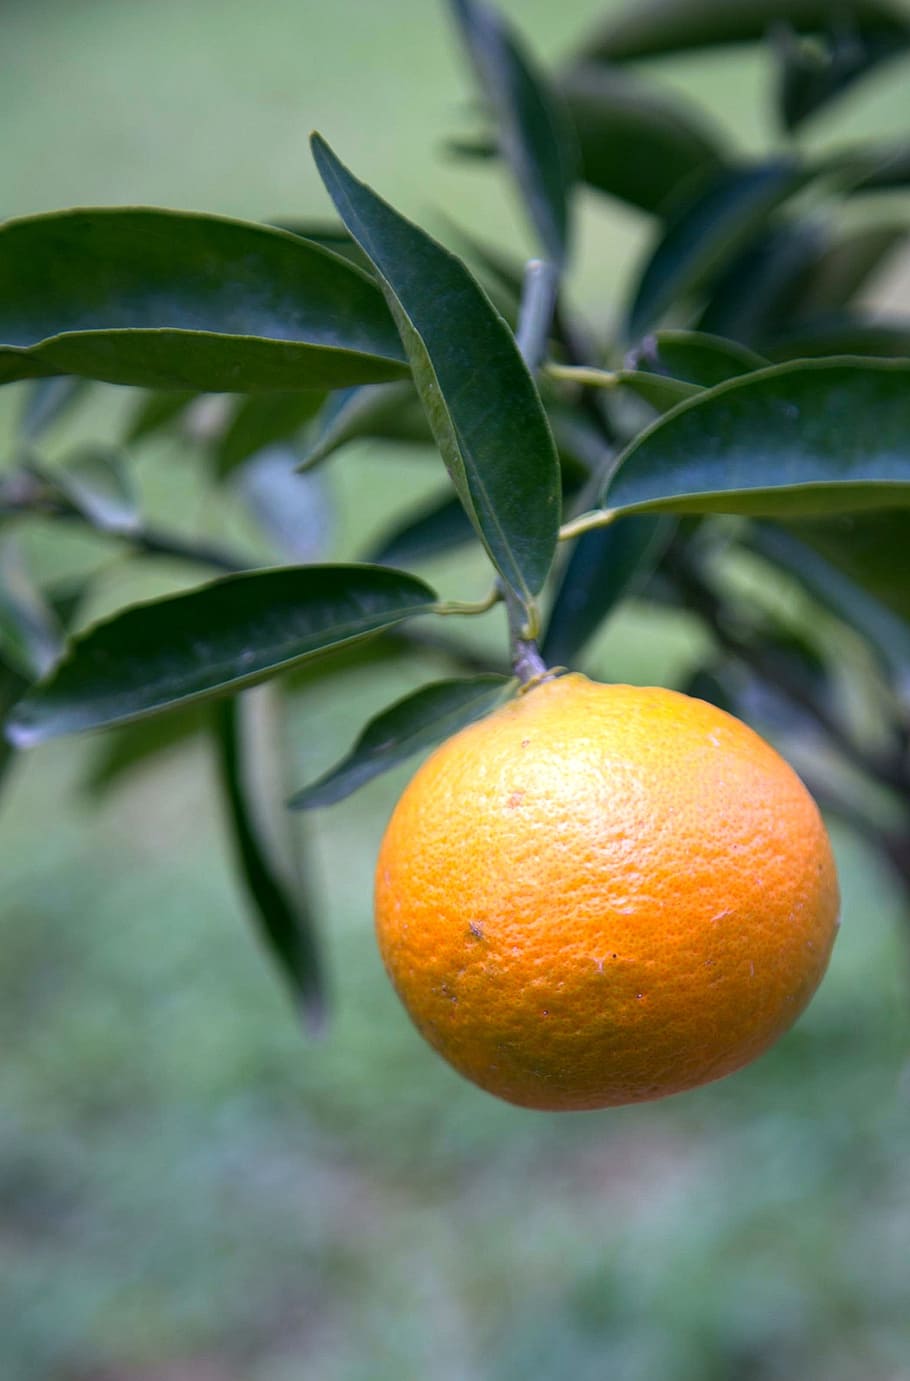 tangerina, fruta, jardim, comida, folha, alimentação saudável, comida e bebida, frutas cítricas, parte da planta, cor laranja